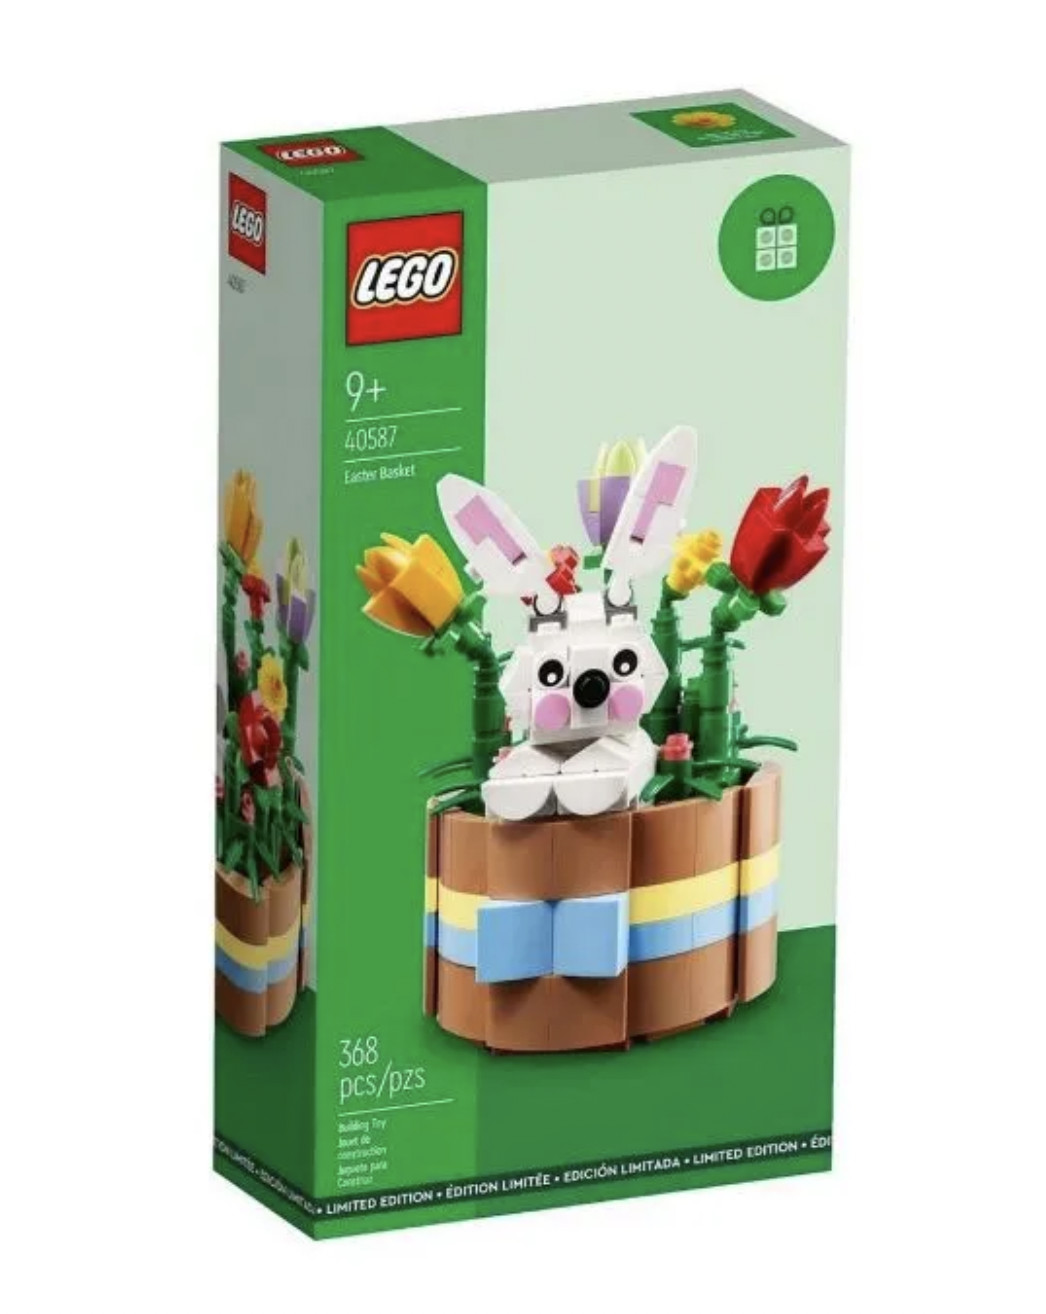 Купить конструктор Lego 40587 Корзина с кроликом, цены на Мегамаркет | Артикул: 600013014643